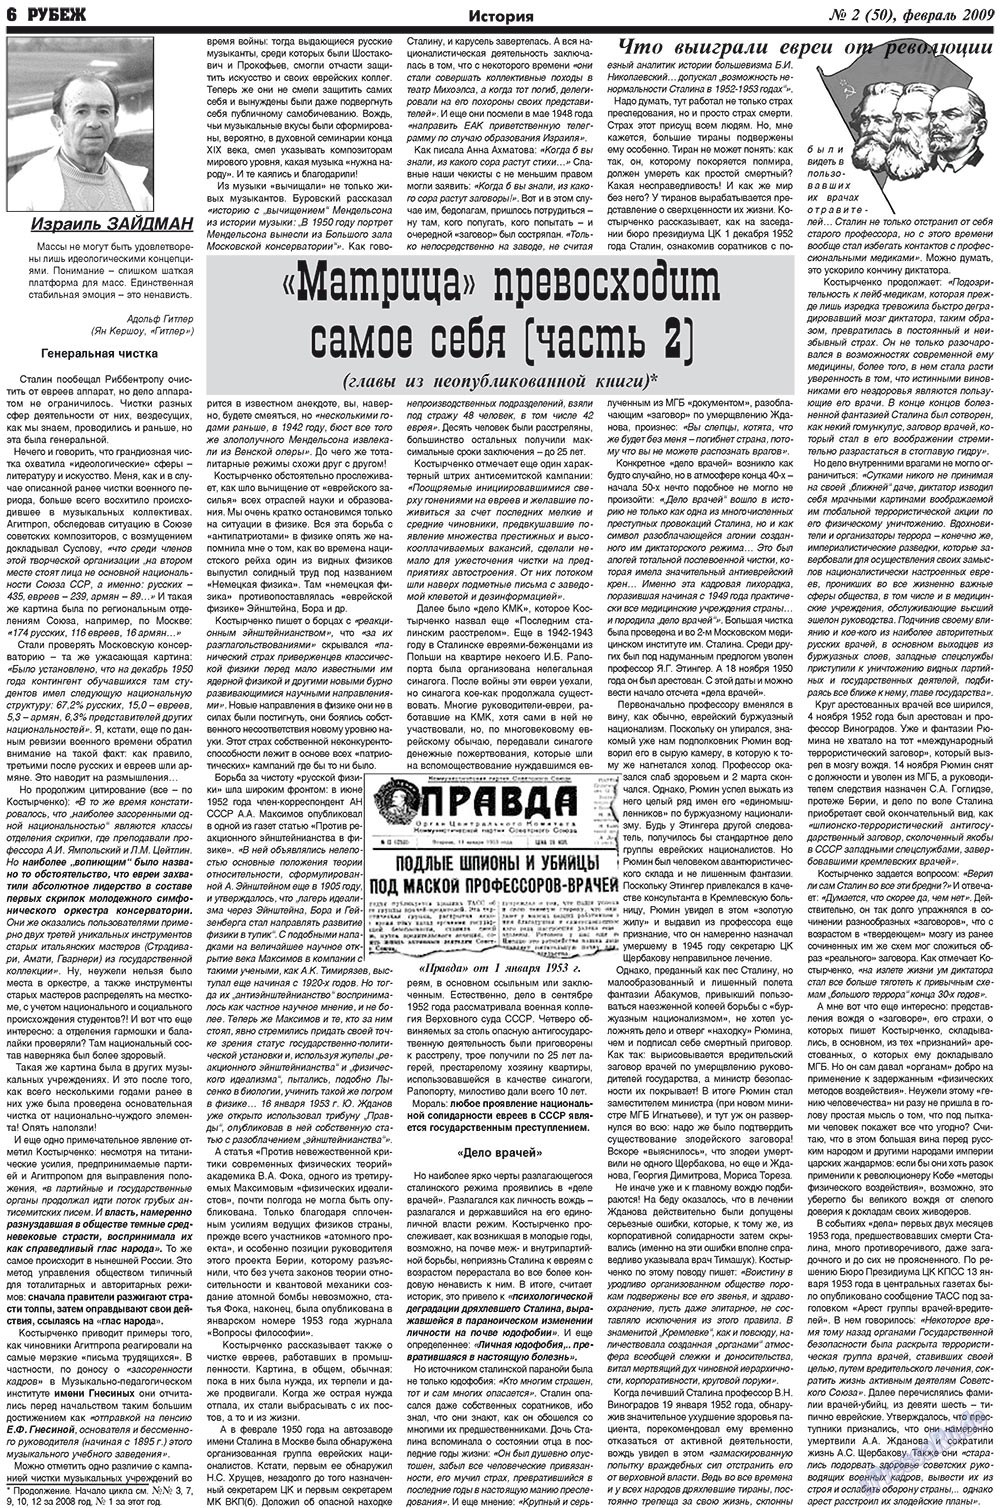 Рубеж (газета). 2009 год, номер 2, стр. 6